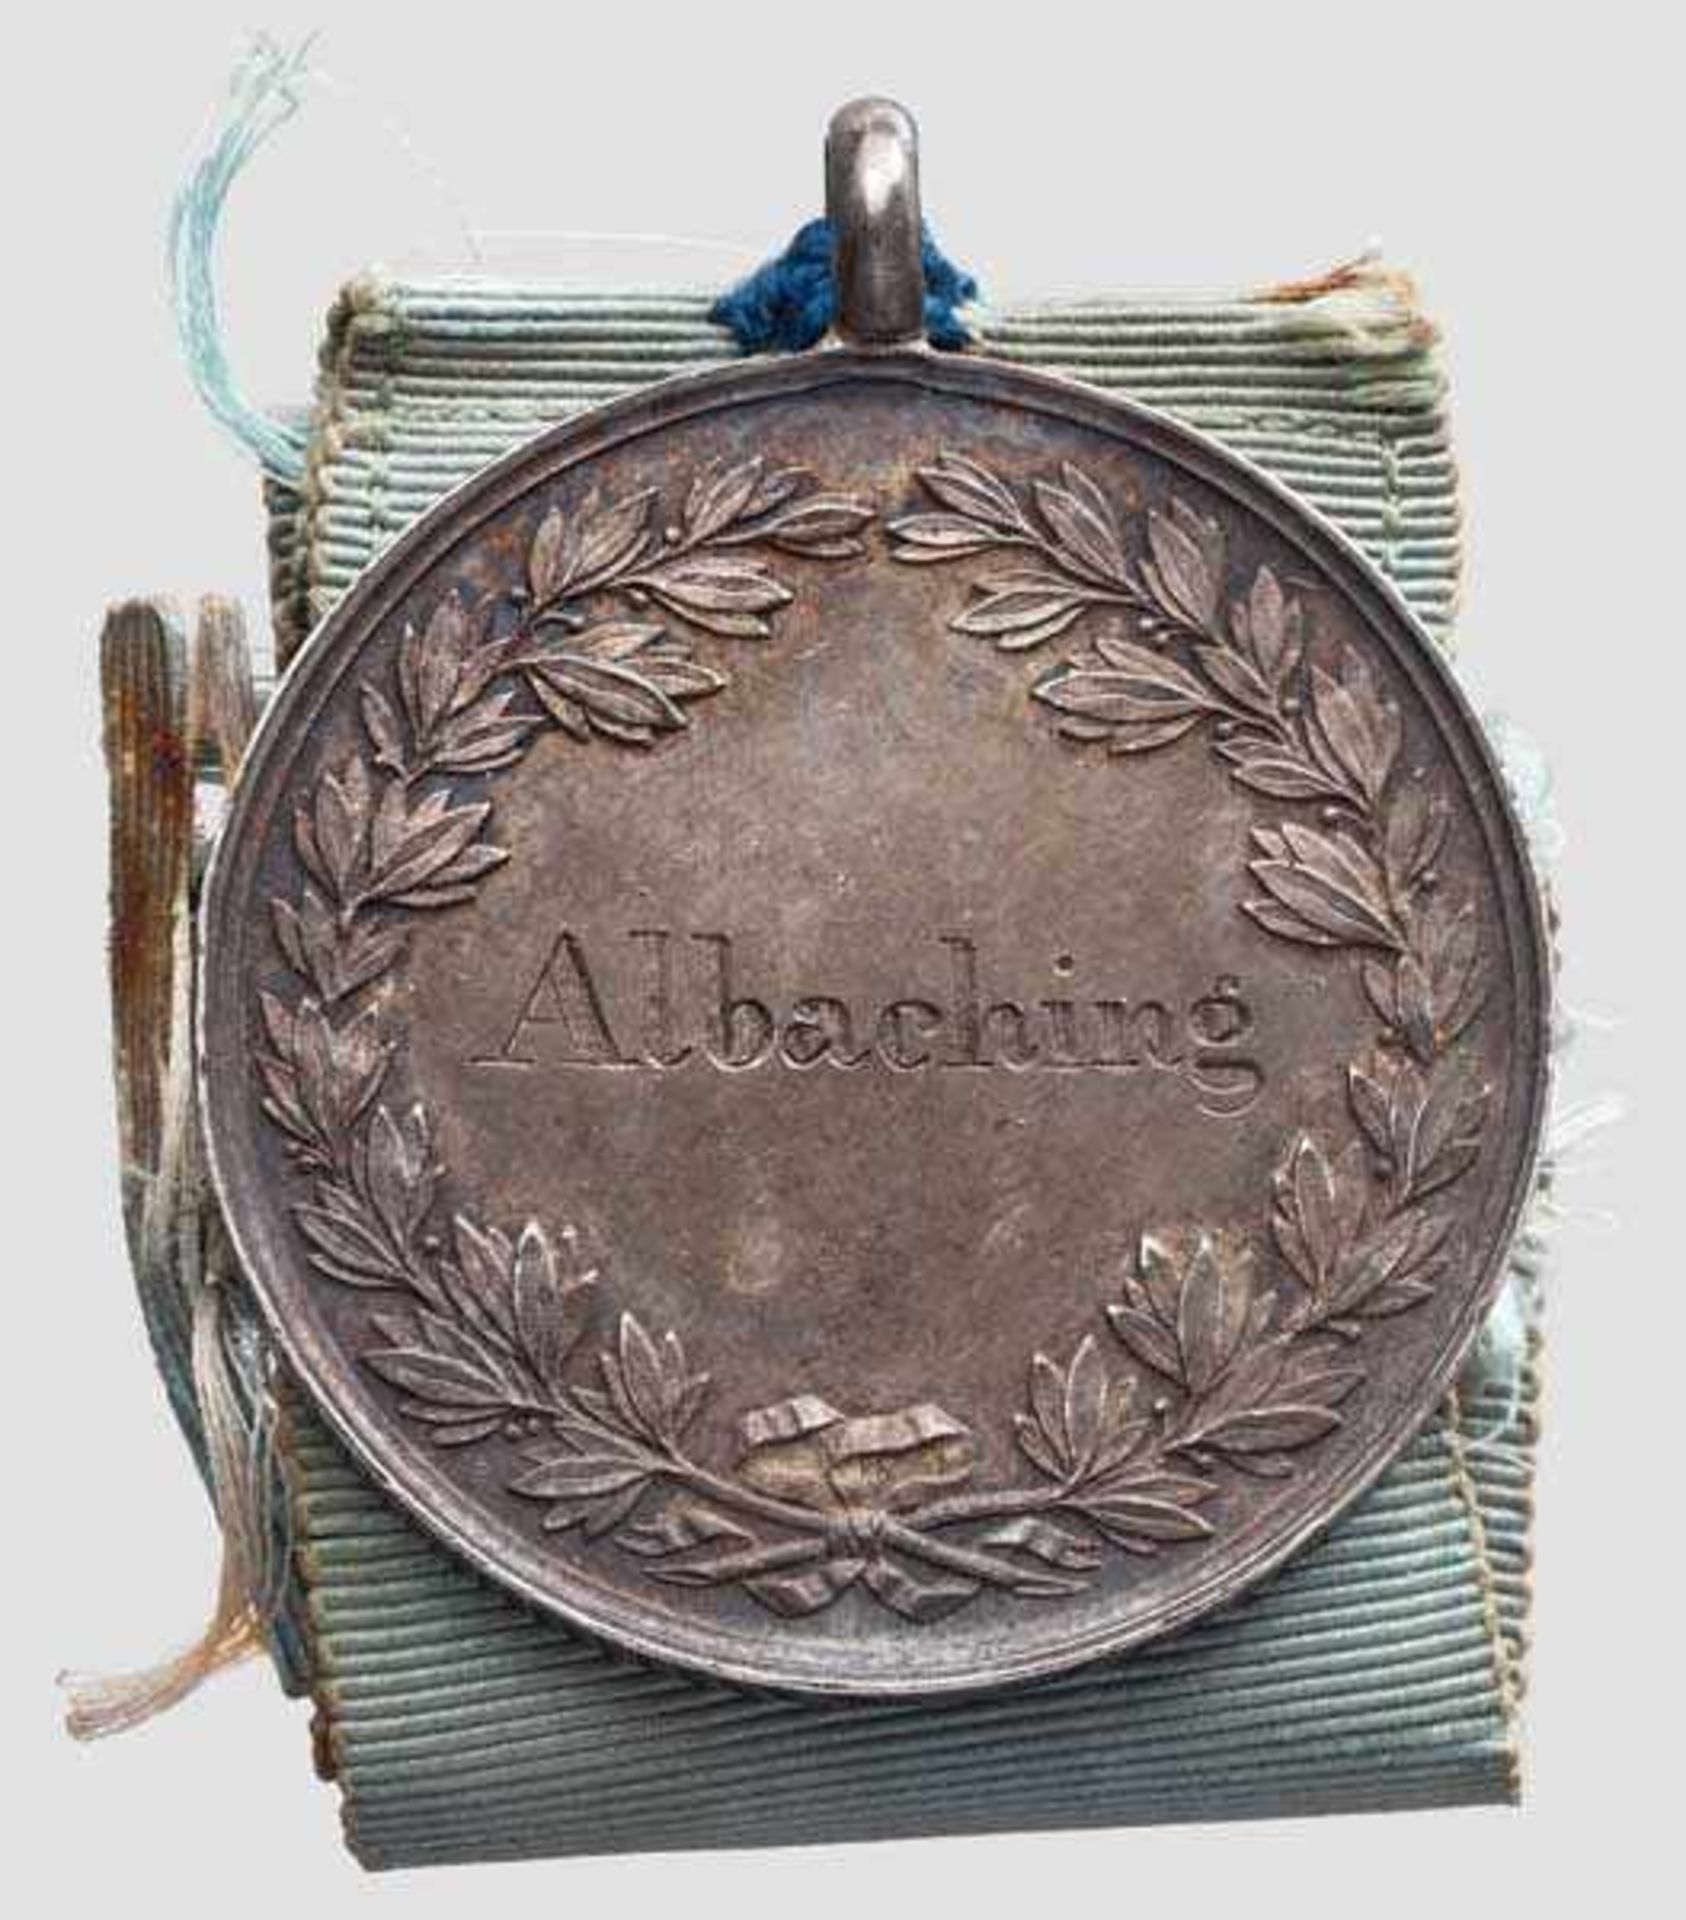 Bürgermeistermedaille der Gemeinde Albaching aus der Regierungszeit von König Ludwig II. 1864 - 1886 - Bild 2 aus 2